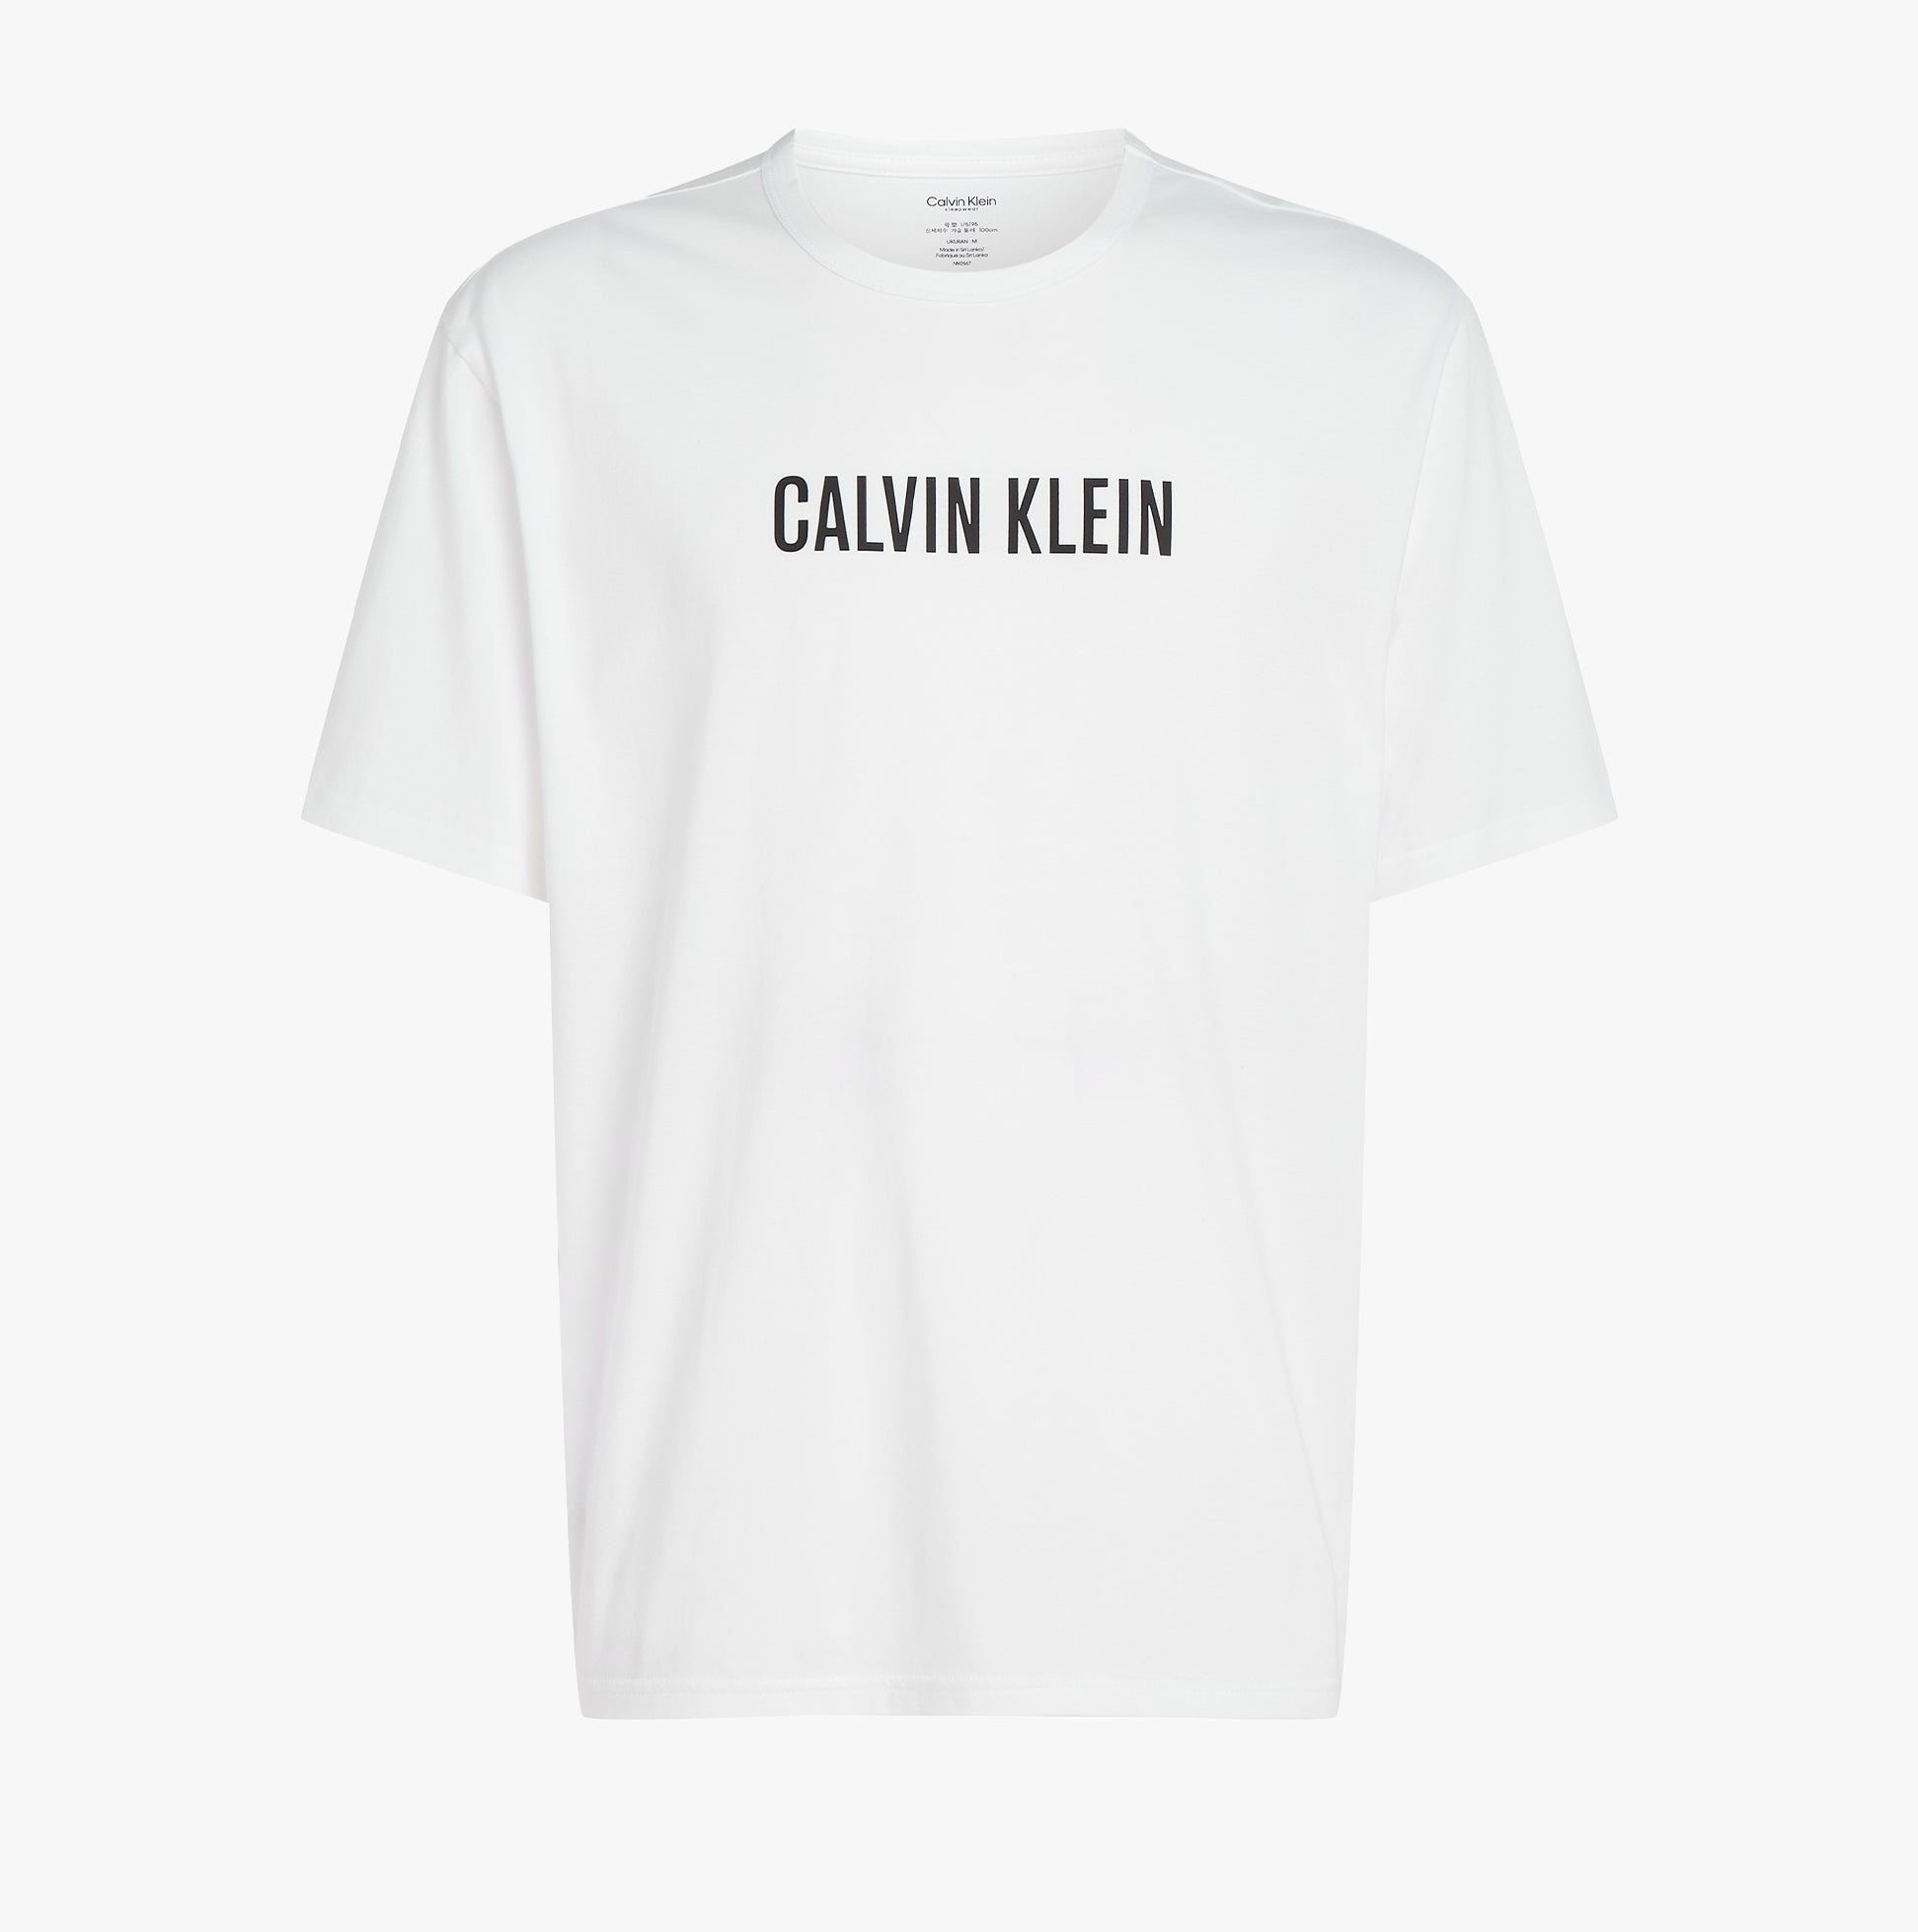 CalvinKlein-[000NM2567E100]-WHITEWBLACKLOGO-6.jpg